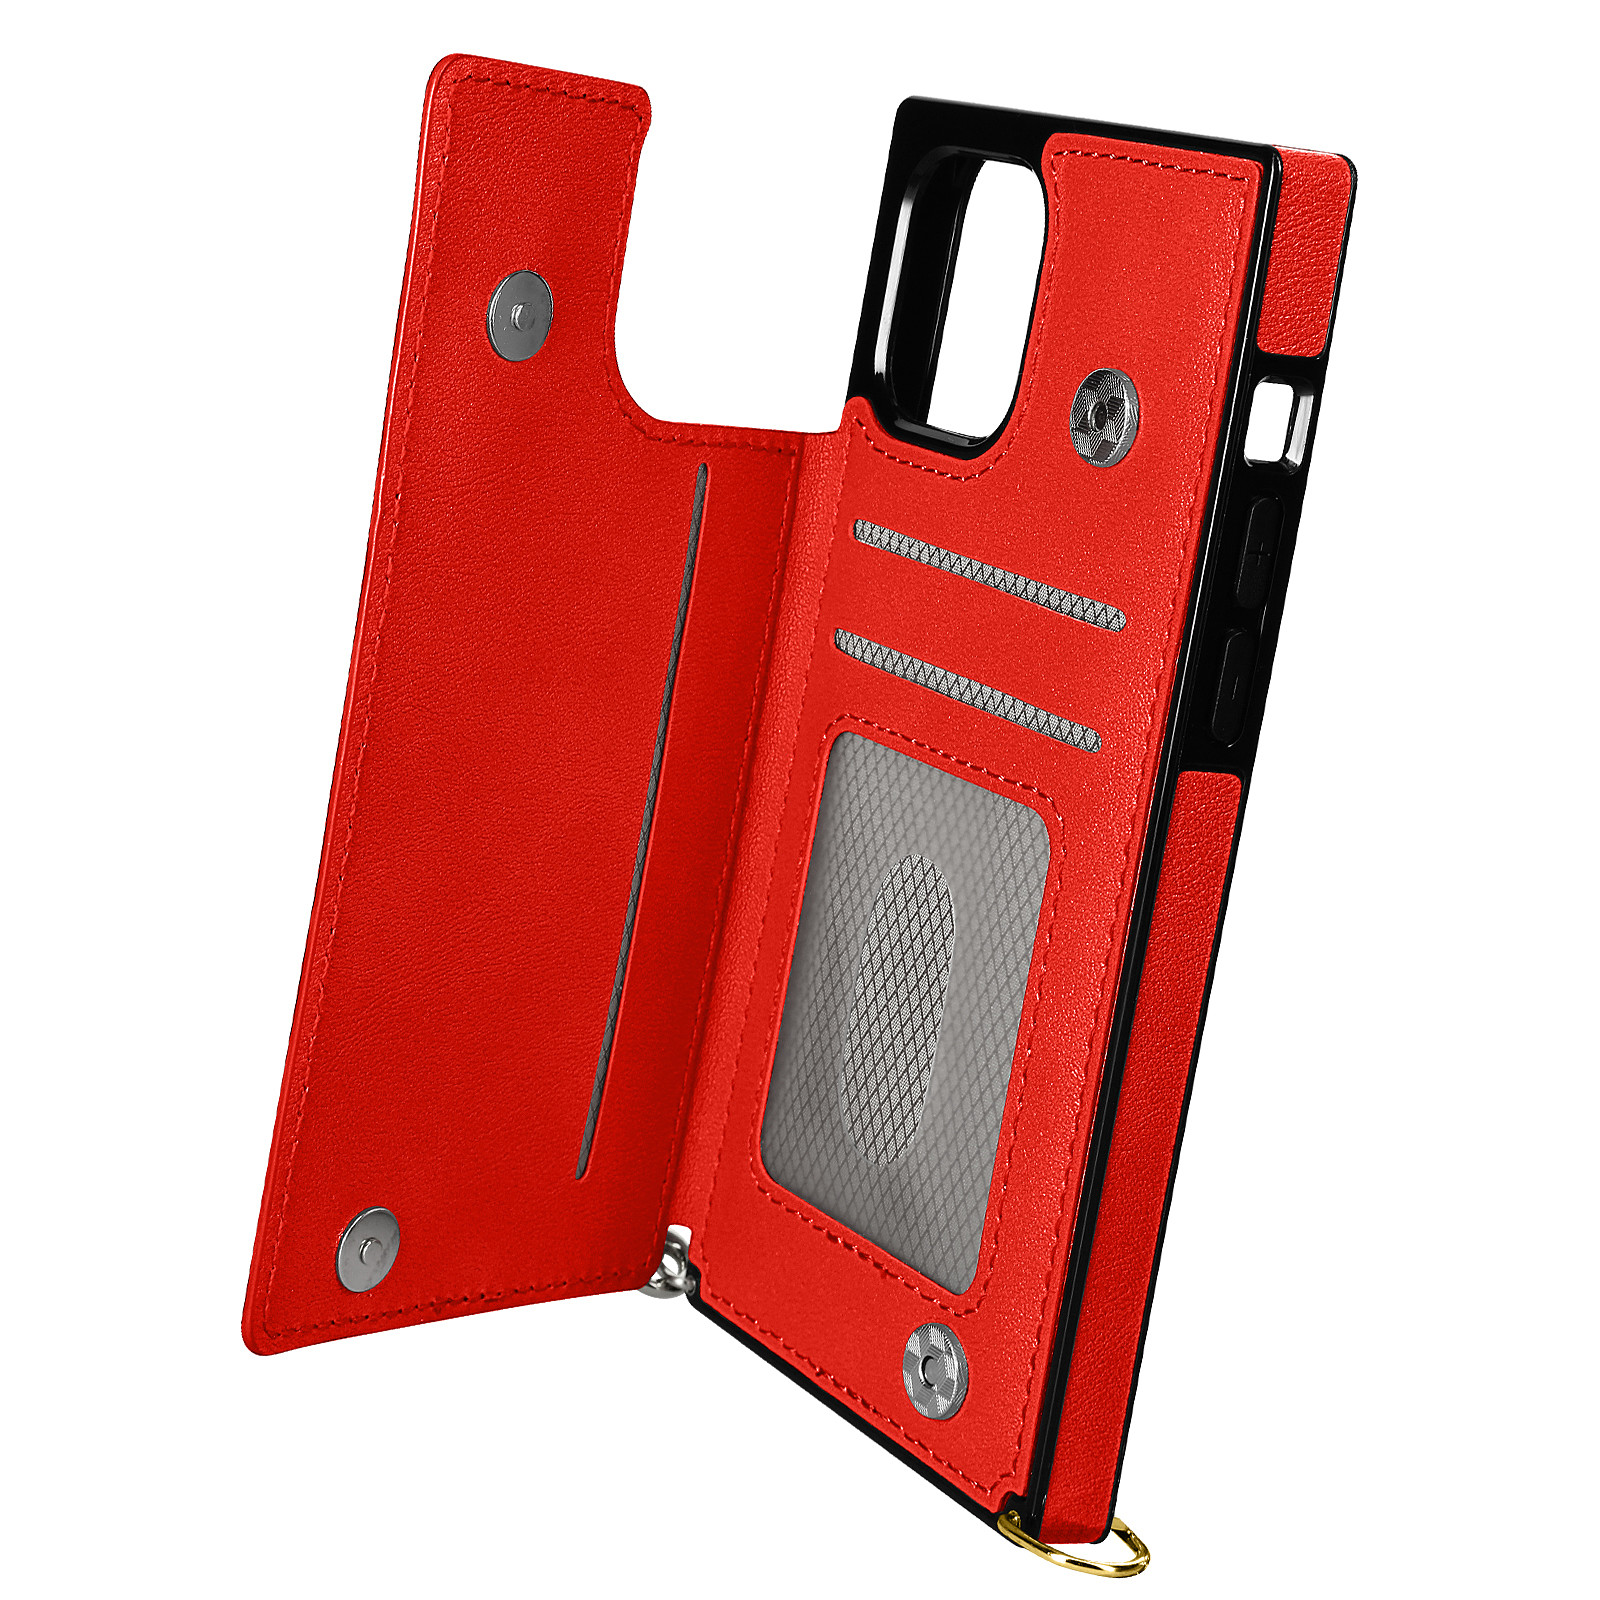 Avizar Coque Cordon pour iPhone 11 Pro Max avec Porte-cartes Support Video Lanière Rouge - Coque telephone Avizar